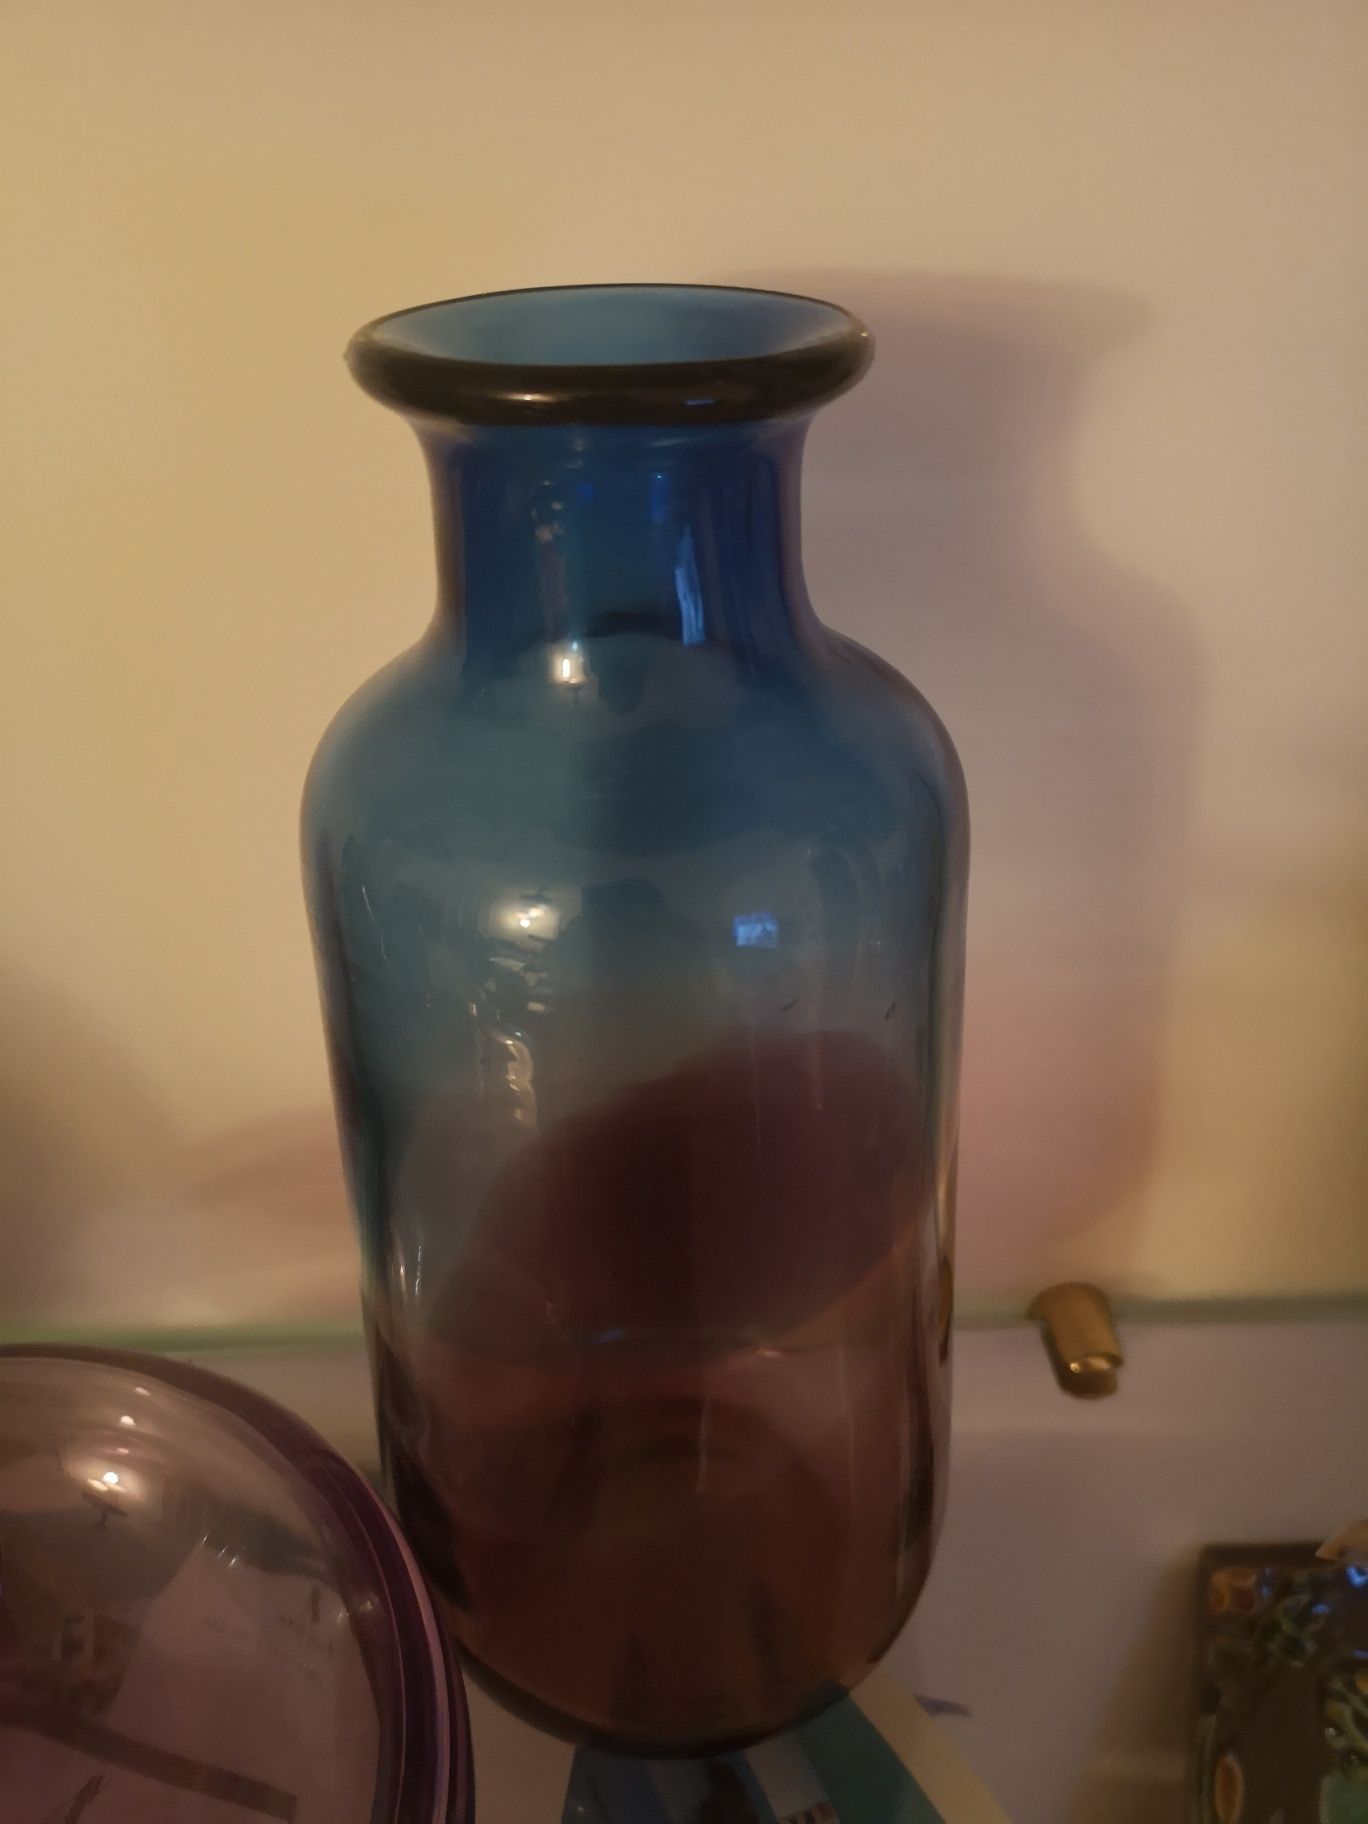 Vendo jarras vidro ikea e marinha grande azul e lilás novas